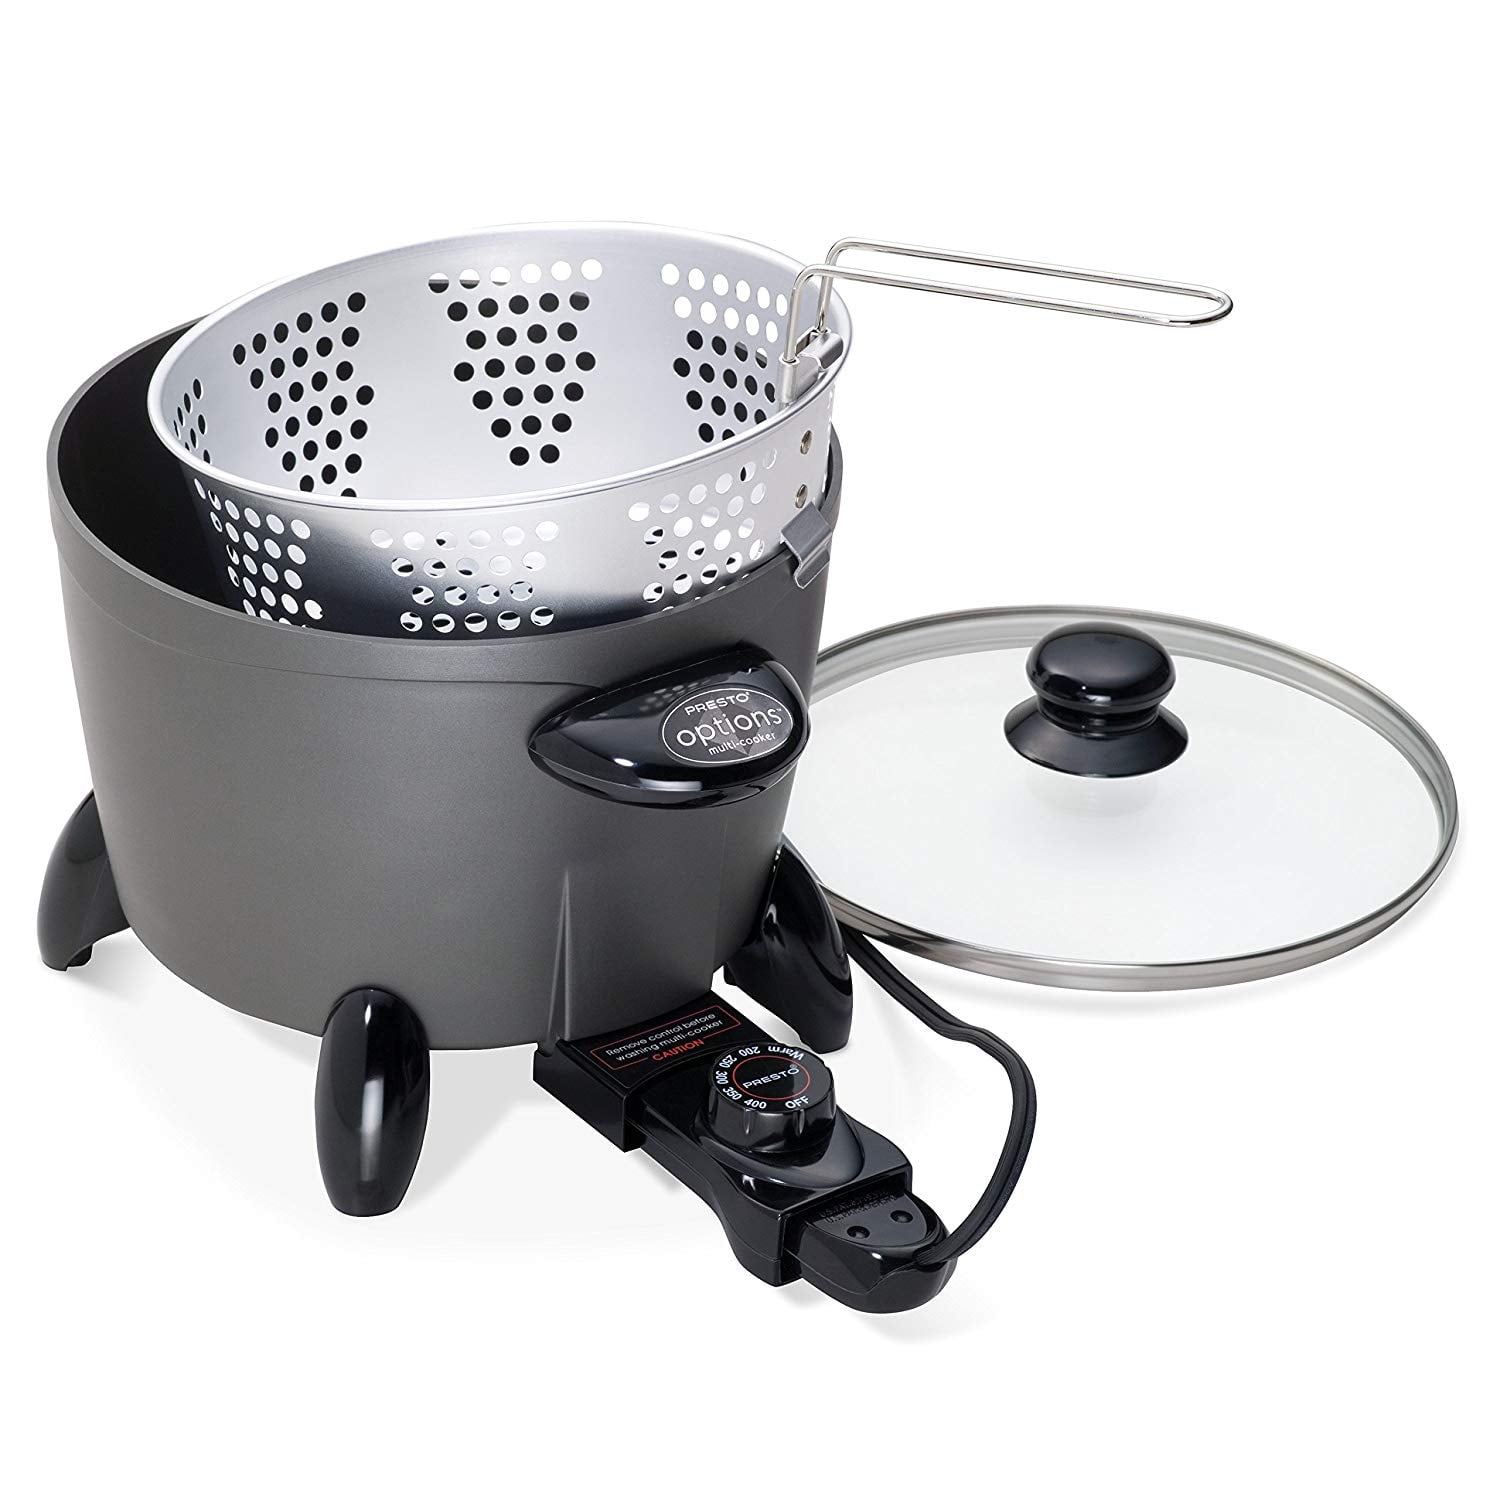 Presto® Kitchen Kettle™ multi-cooker/steamer - Product Info - Video -  Presto®